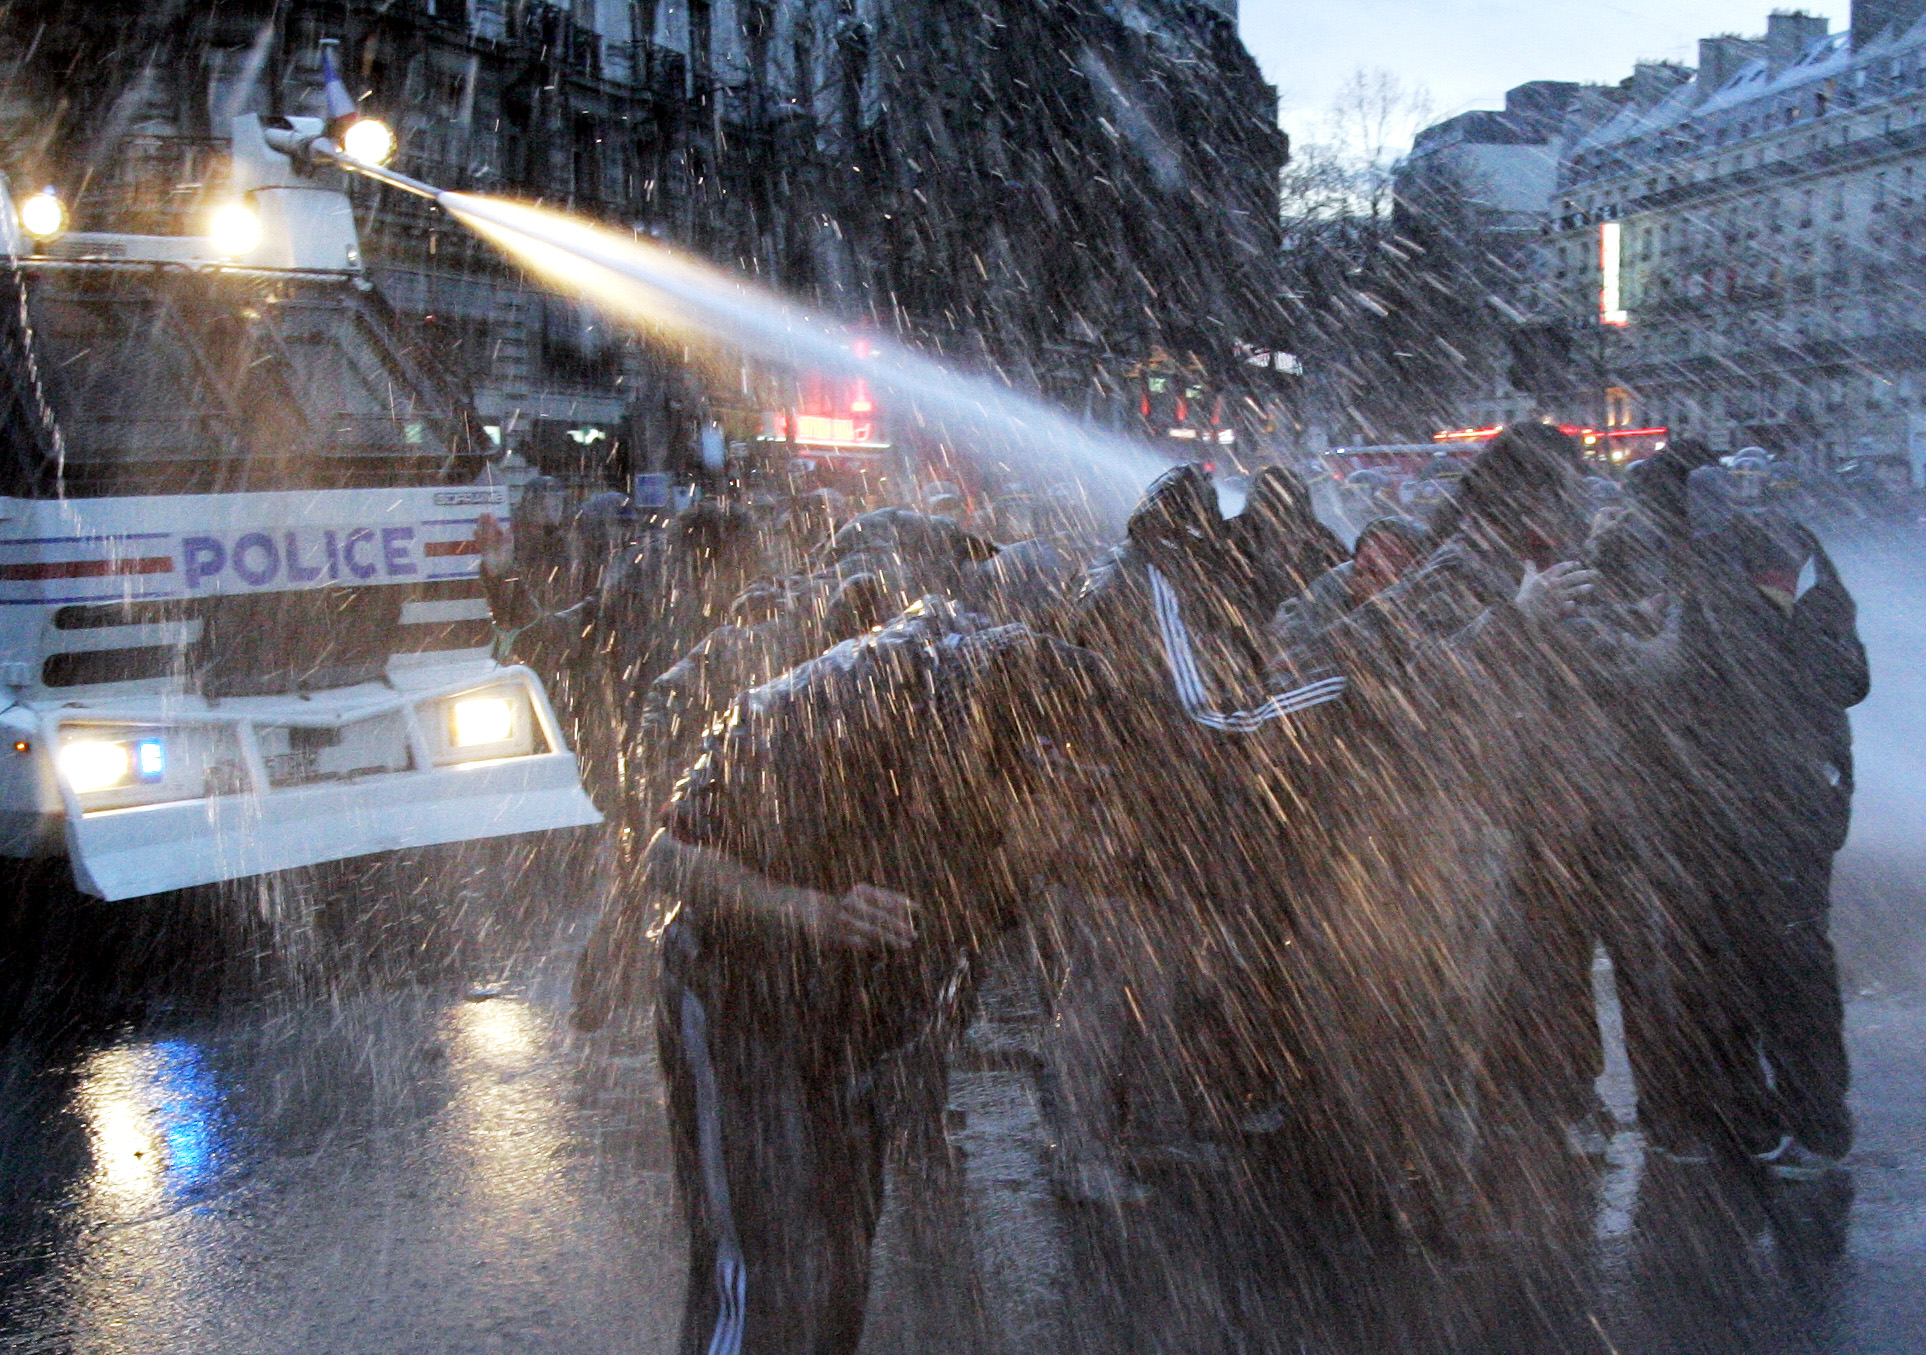 <b>ΧΥΤΑ Κερατέας</b> Οχημα εκτόξευσης νερού για πρώτη φορά κατά διαδηλωτών